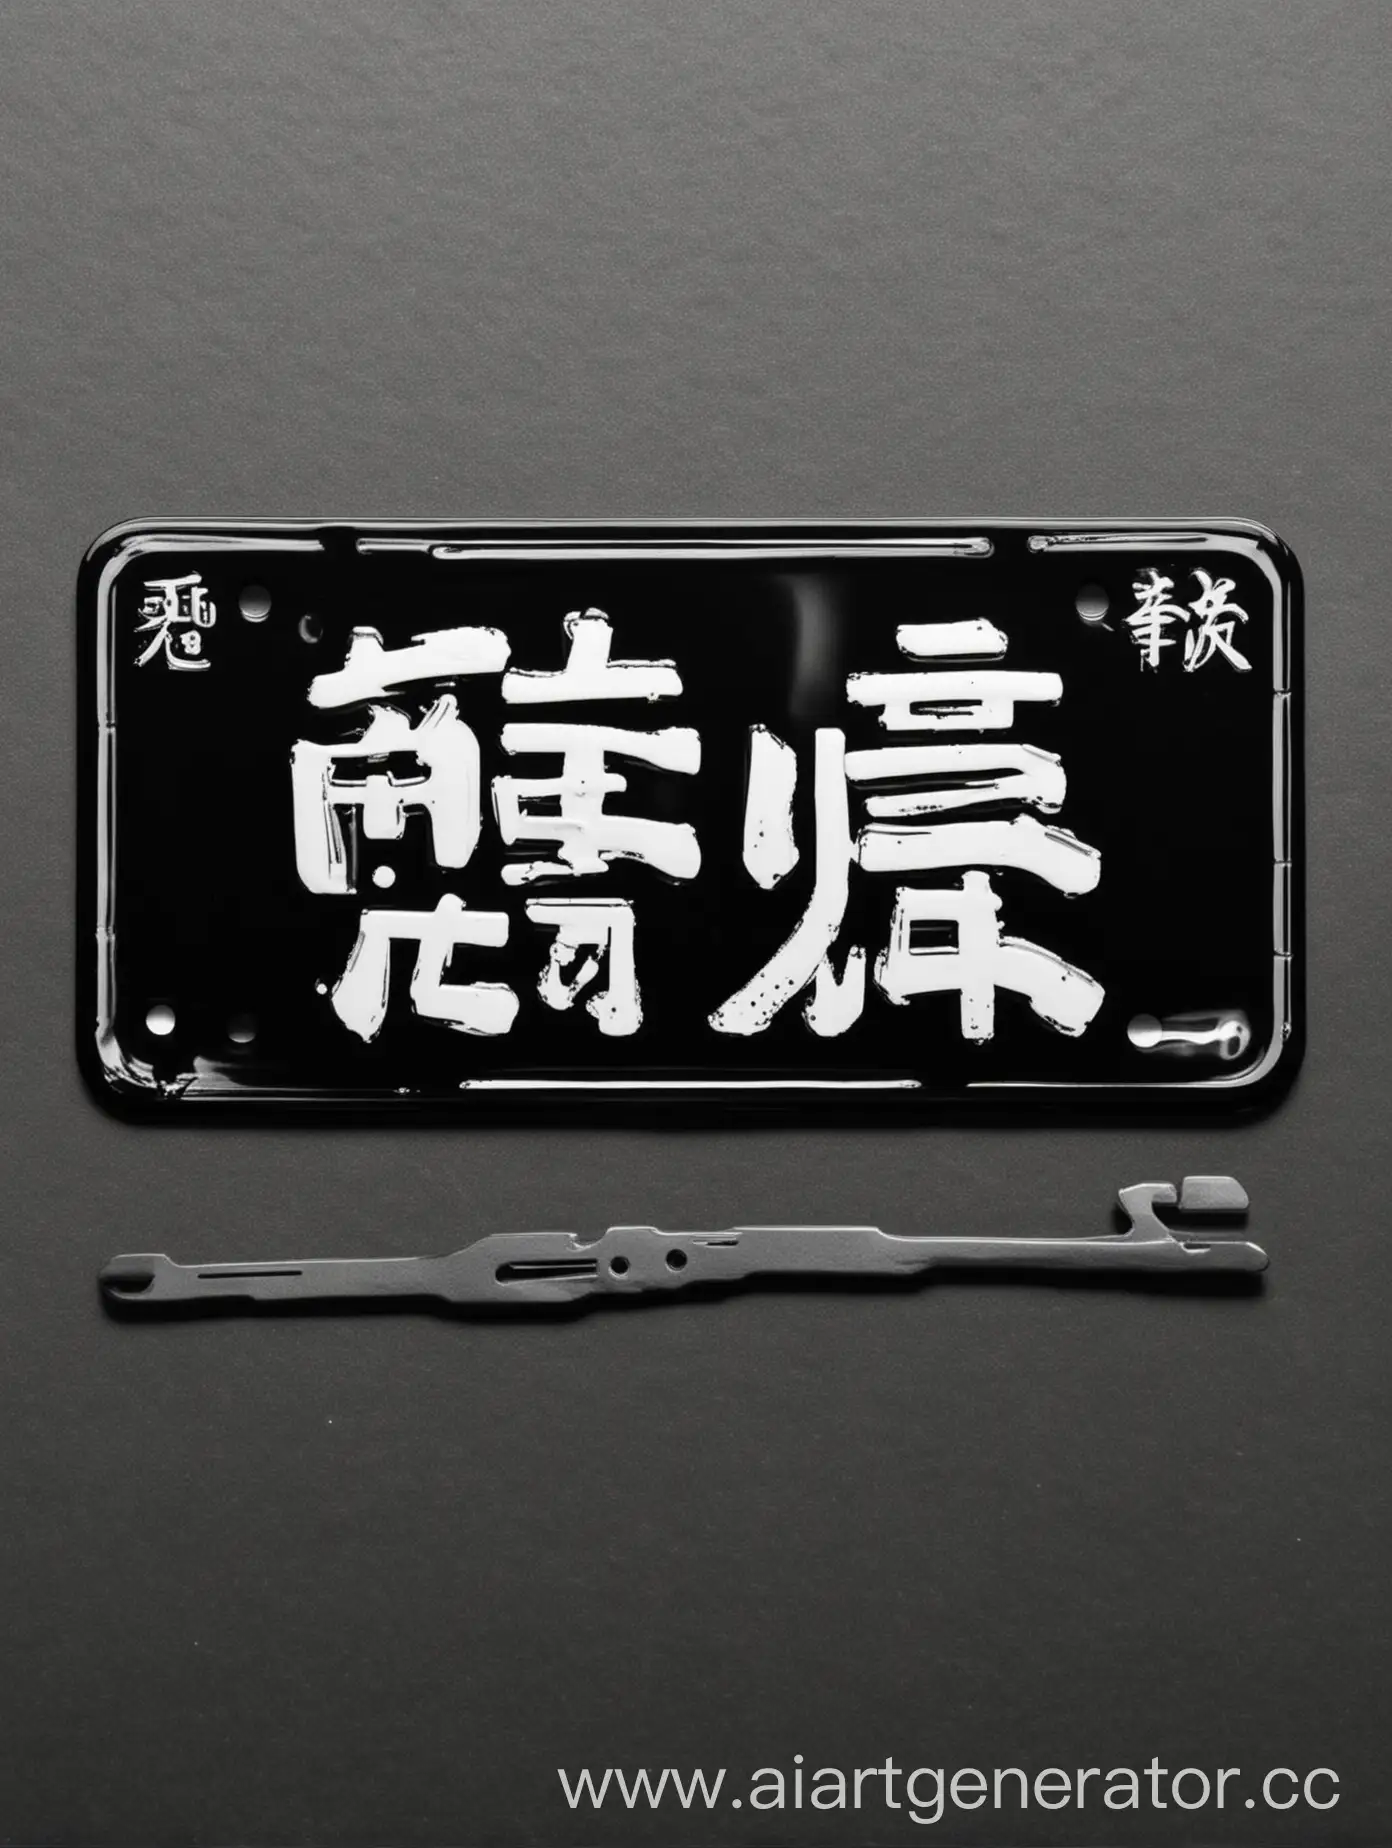 номерной знак мотороллера, чёрный фон, белые японские иероглифы